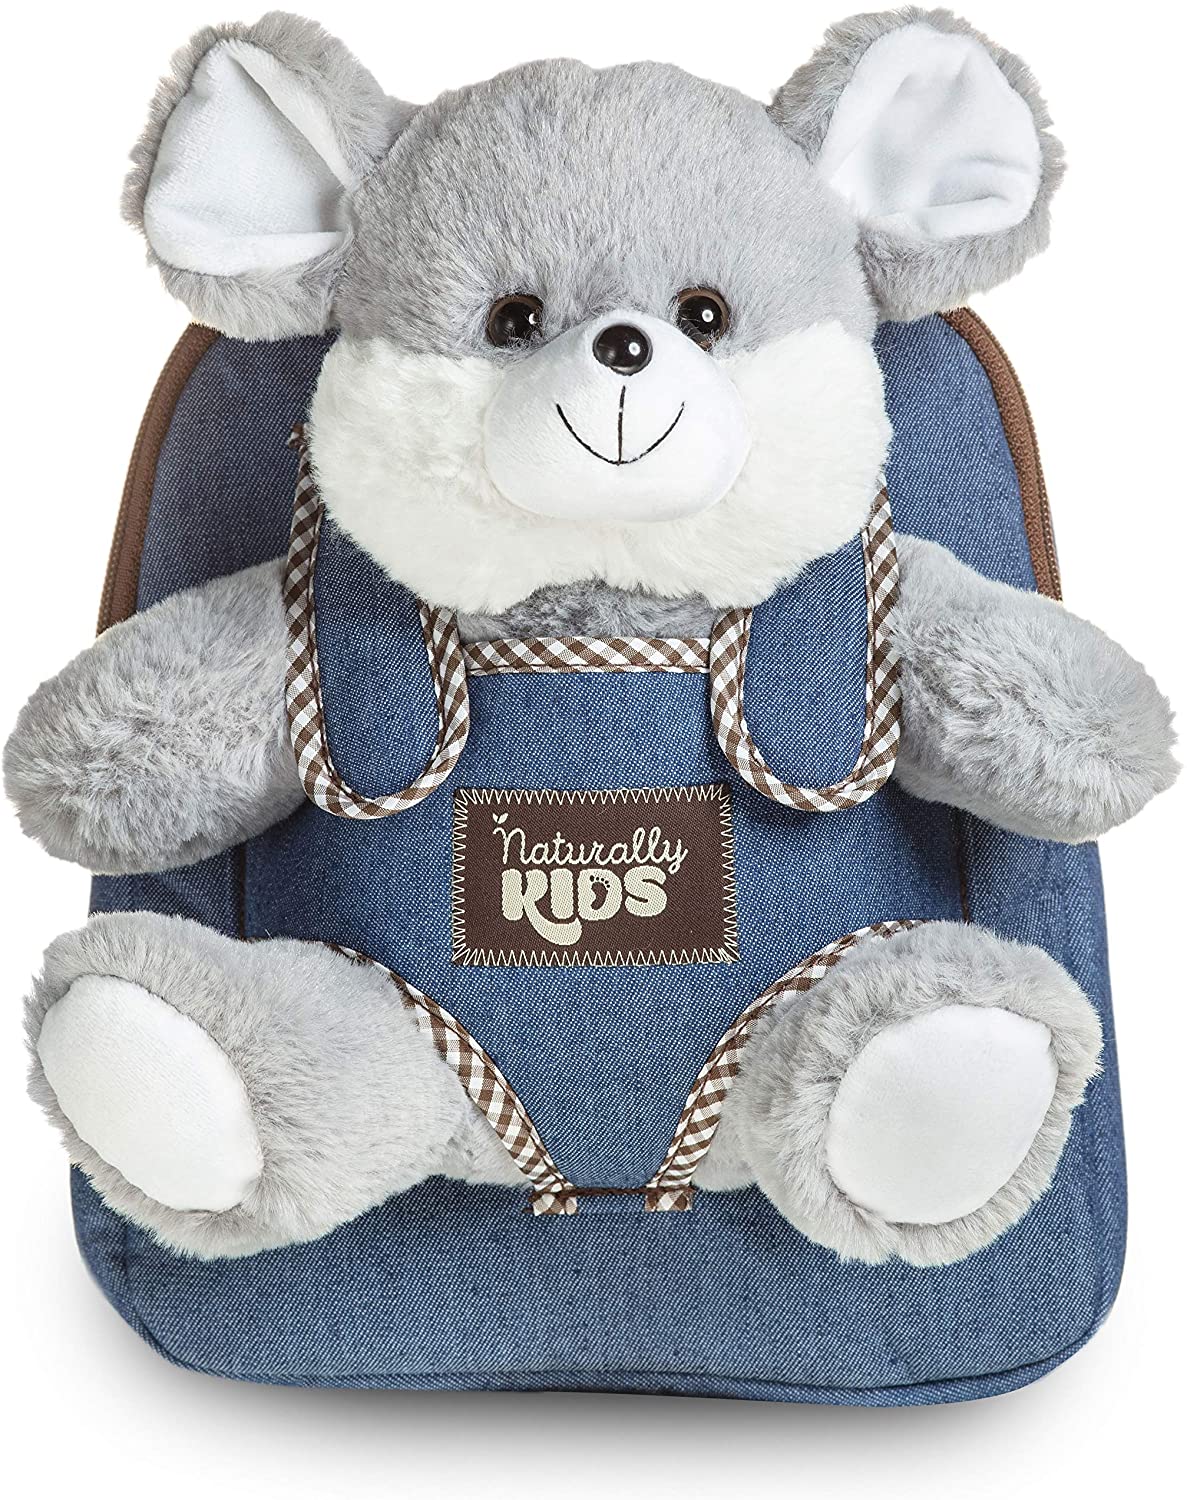 Teddy Bear by I Am Yuni Backpack for Sale by IamYuni